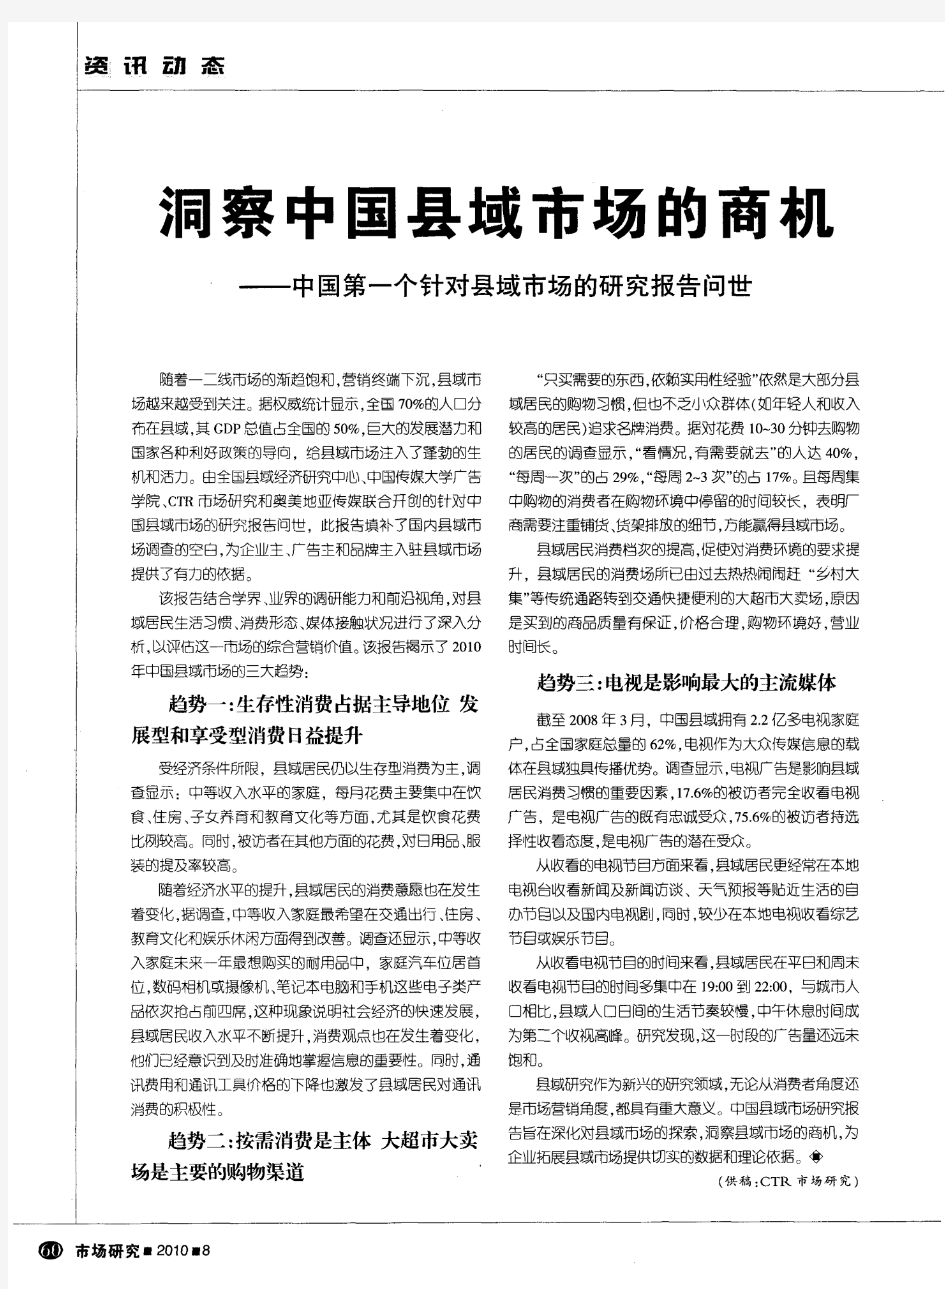 洞察中国县域市场的商机——中国第一个针对县域市场的研究报告问世